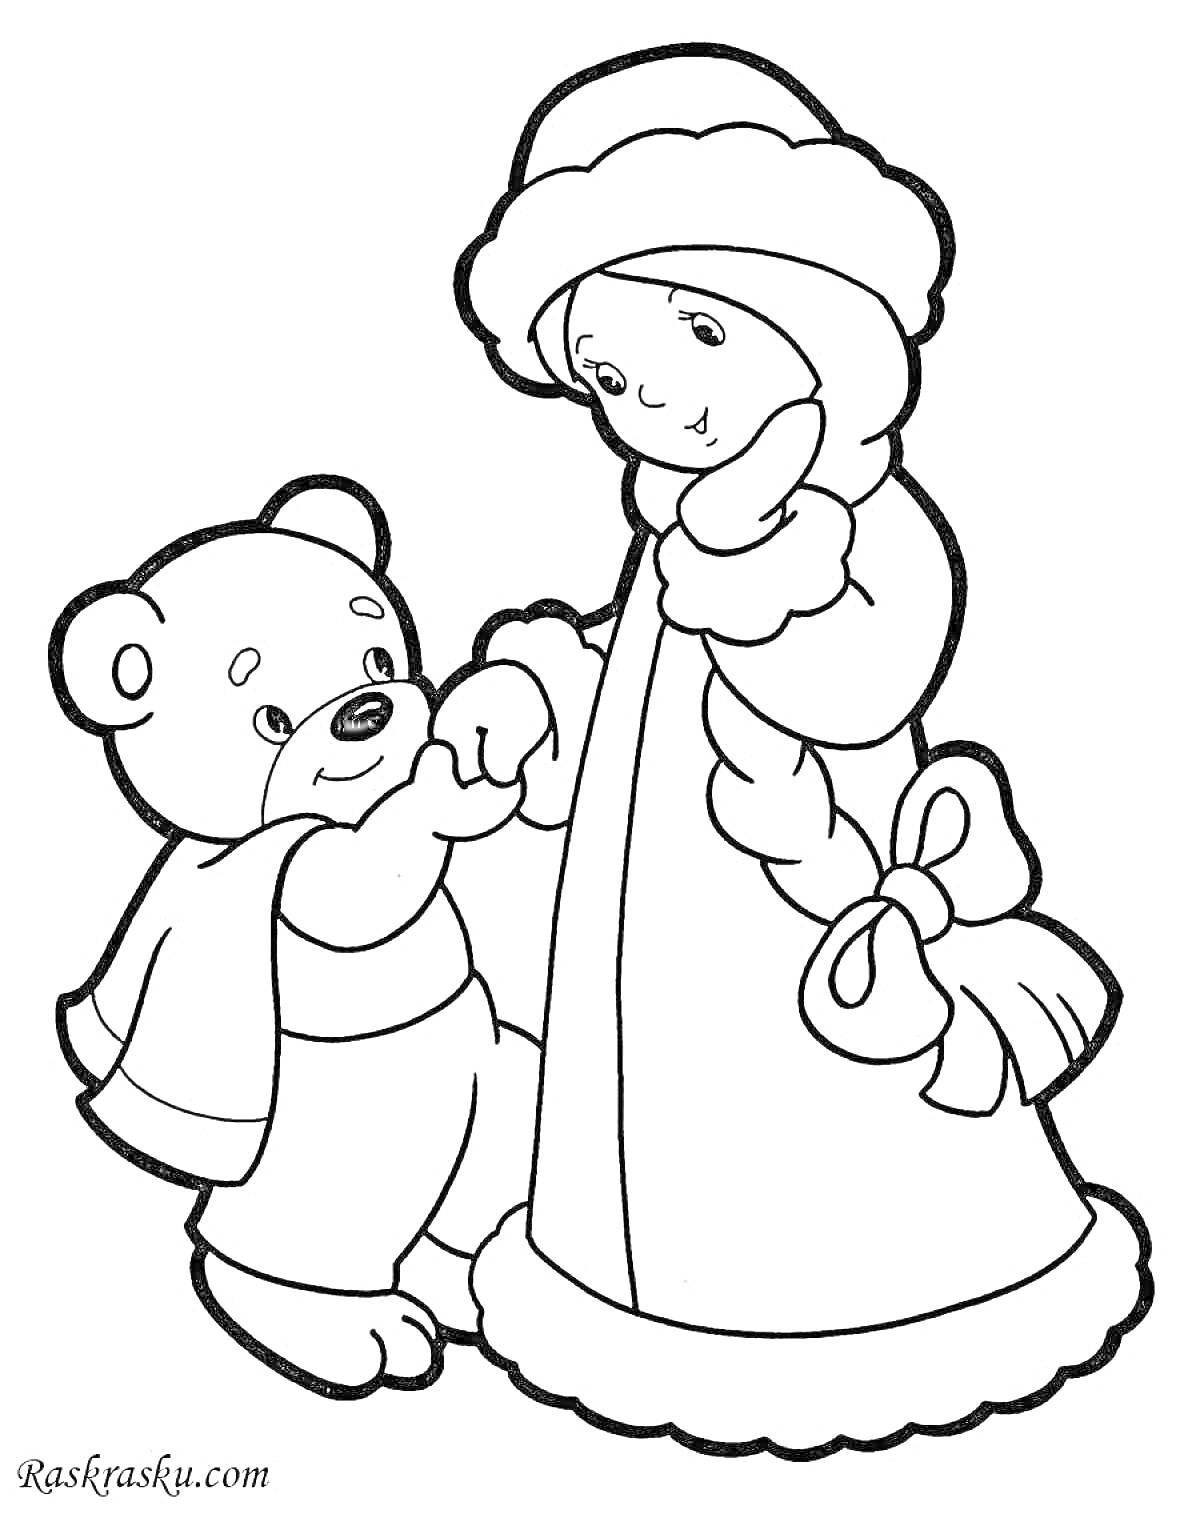 Раскраска Снегурочка и медвежонок держатся за руки